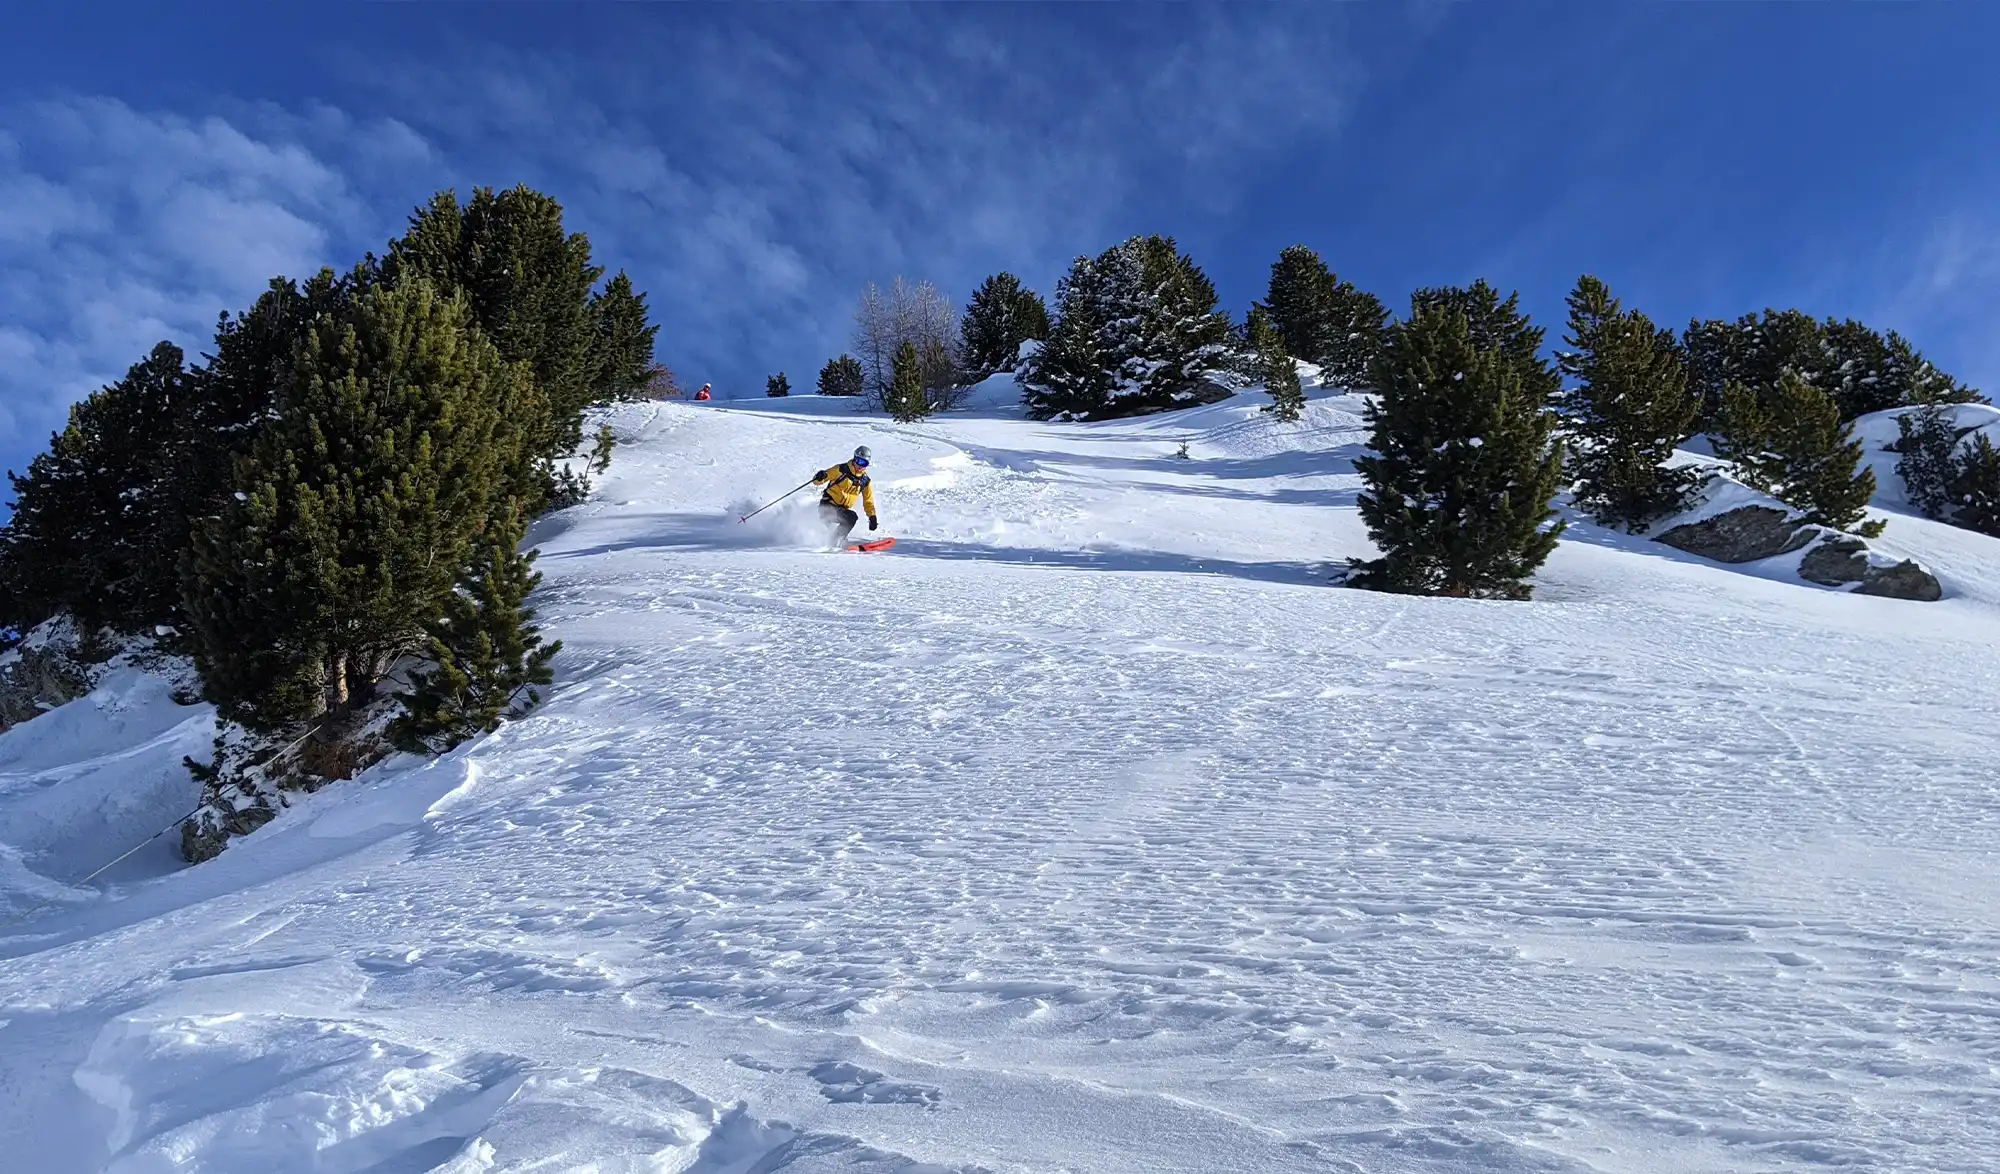 Simon Akam ski hors-piste